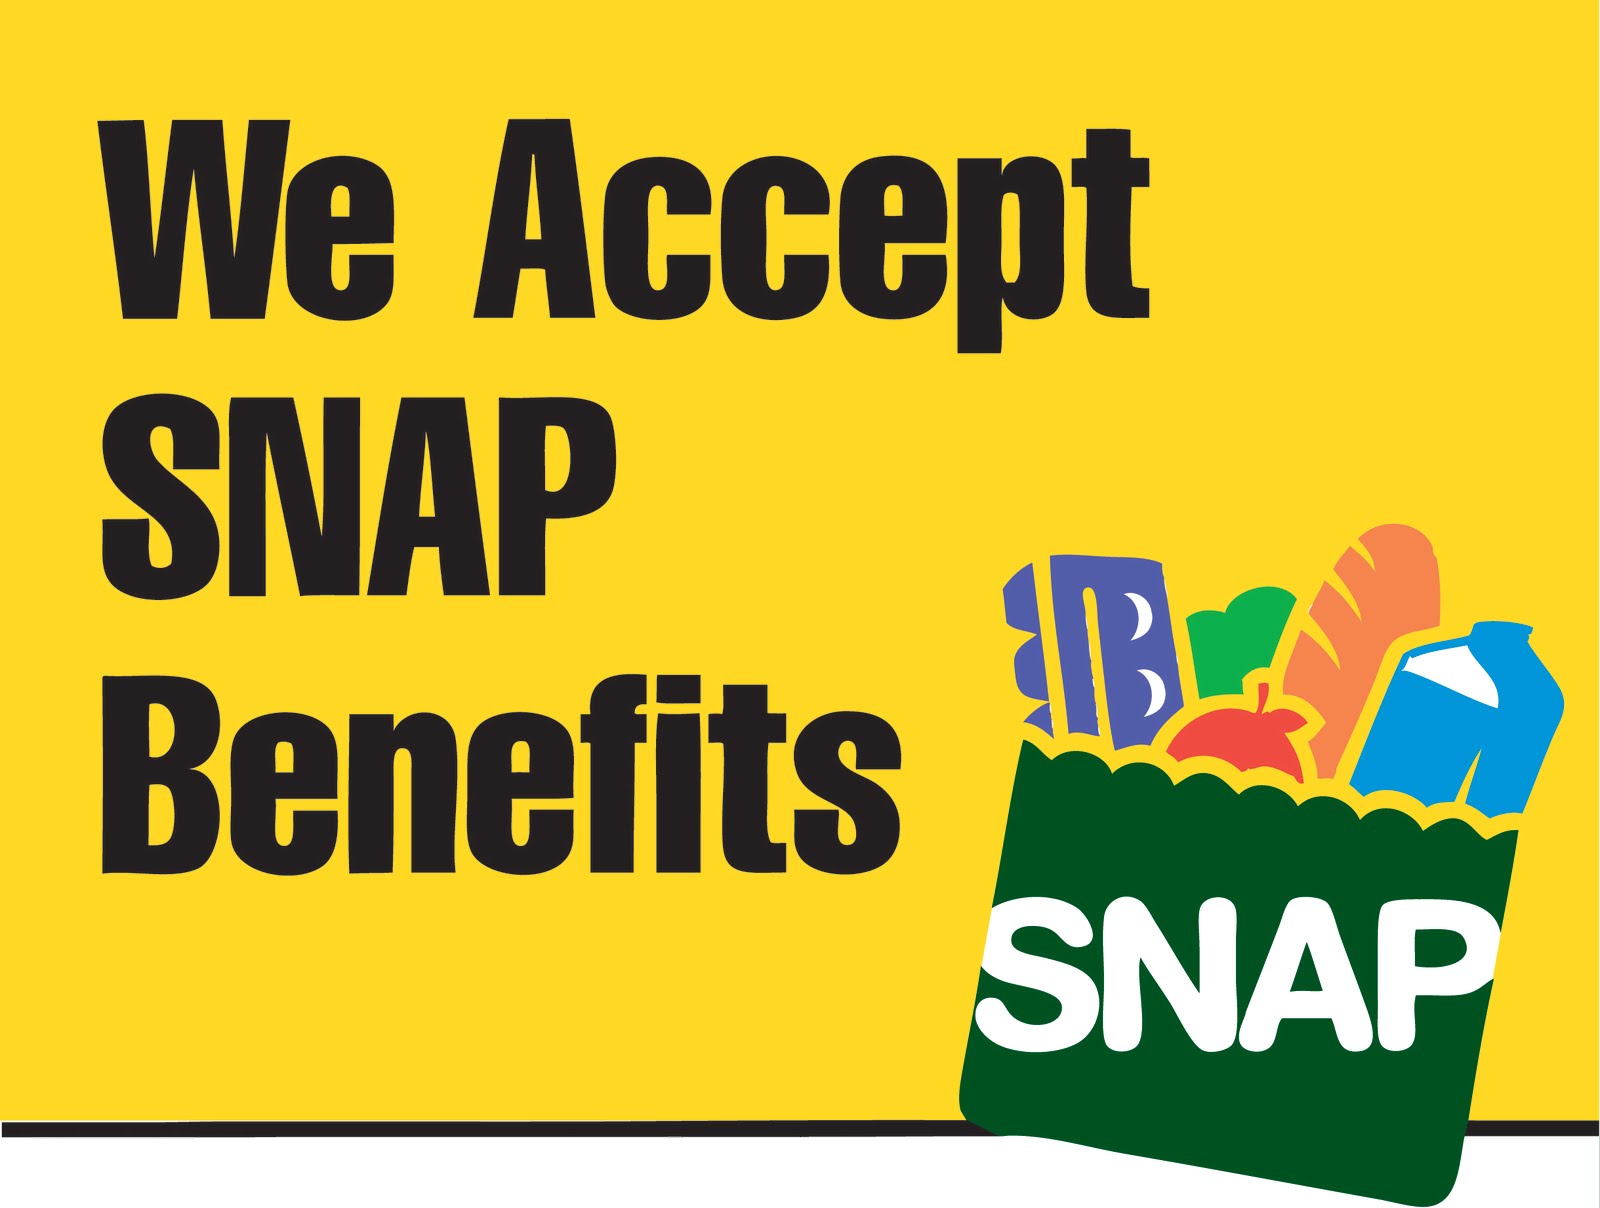 ebt card food stamps where use benefits snap accept stamp florida alabama kansas